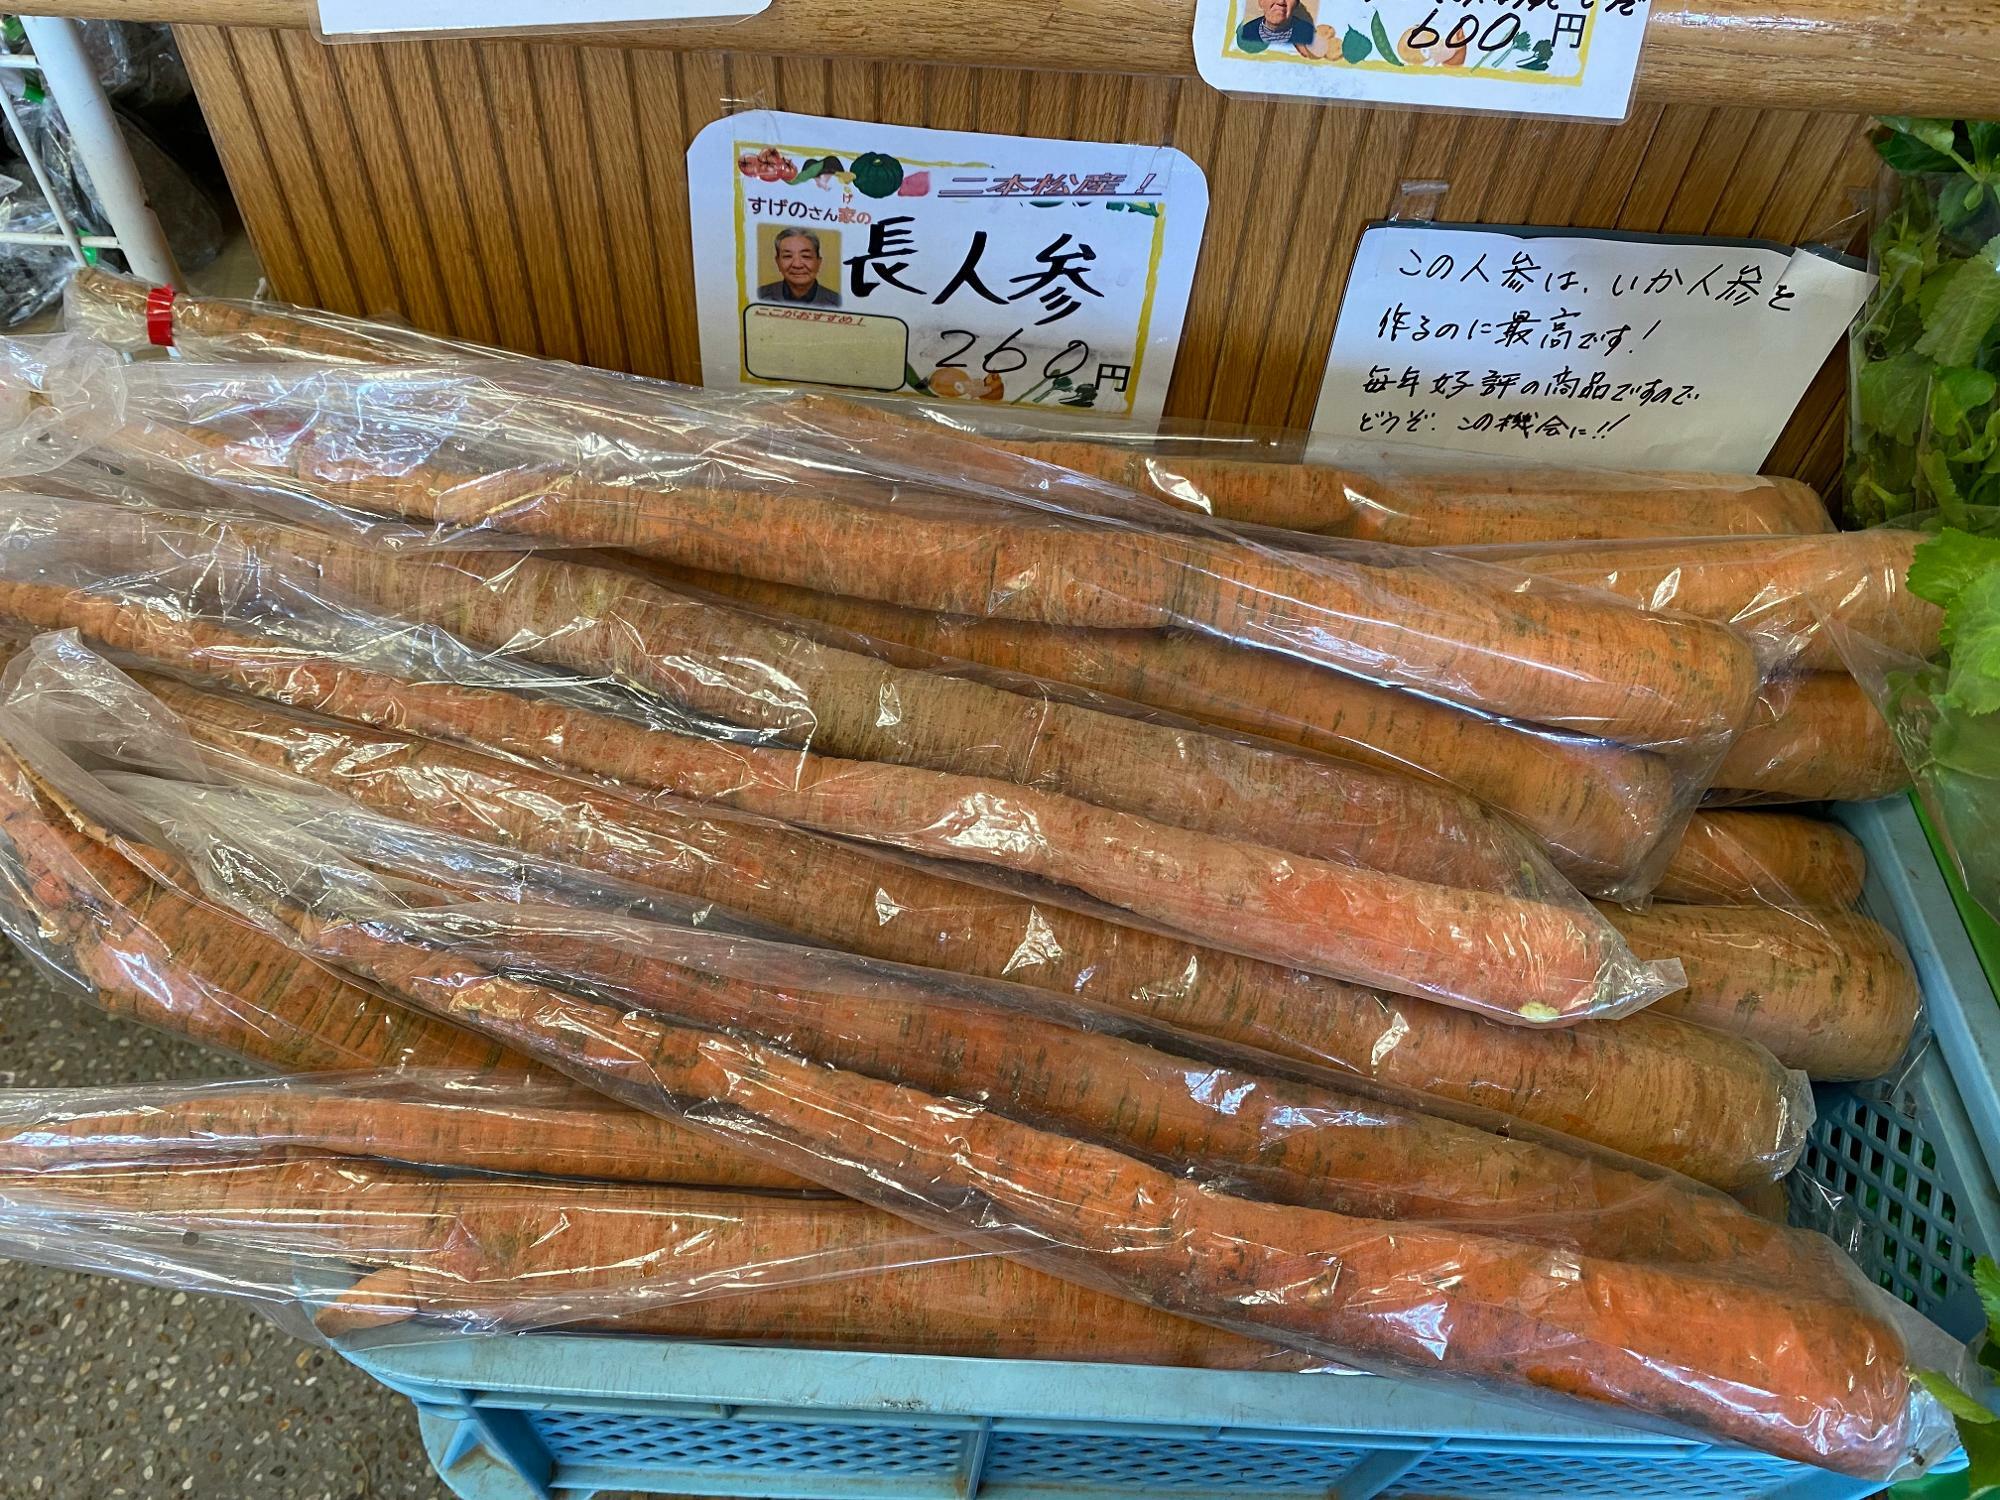 福島県の伝統野菜「長にんじん」260円